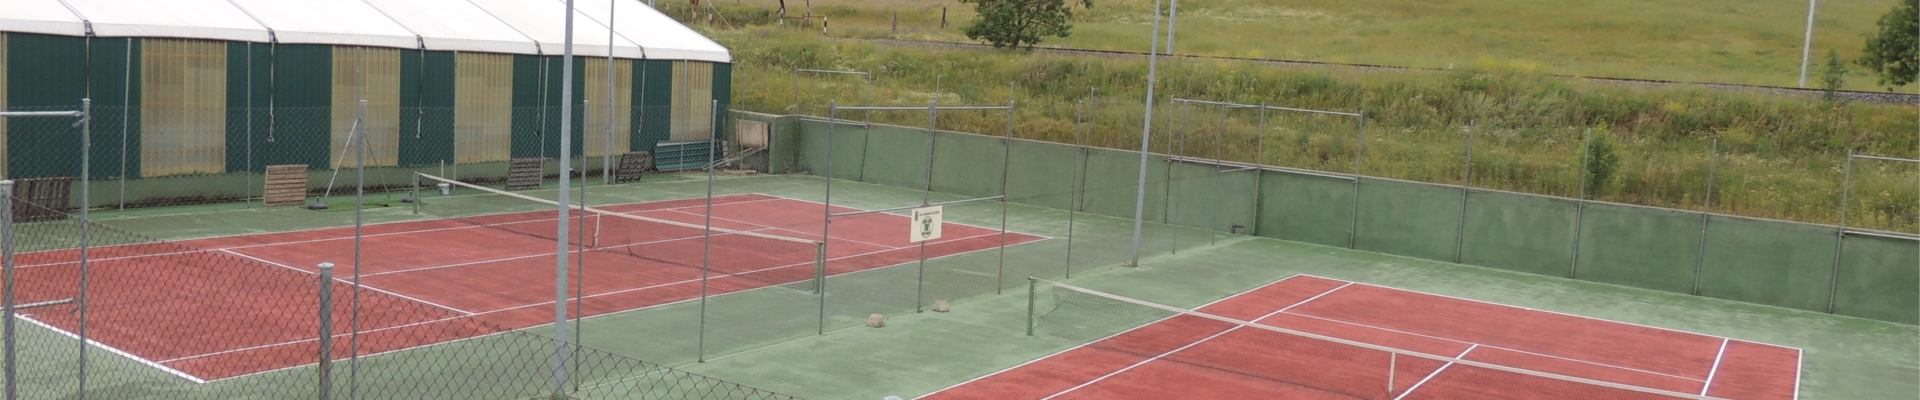 Pistas de Tenis Municipales | DSCN0079.JPG